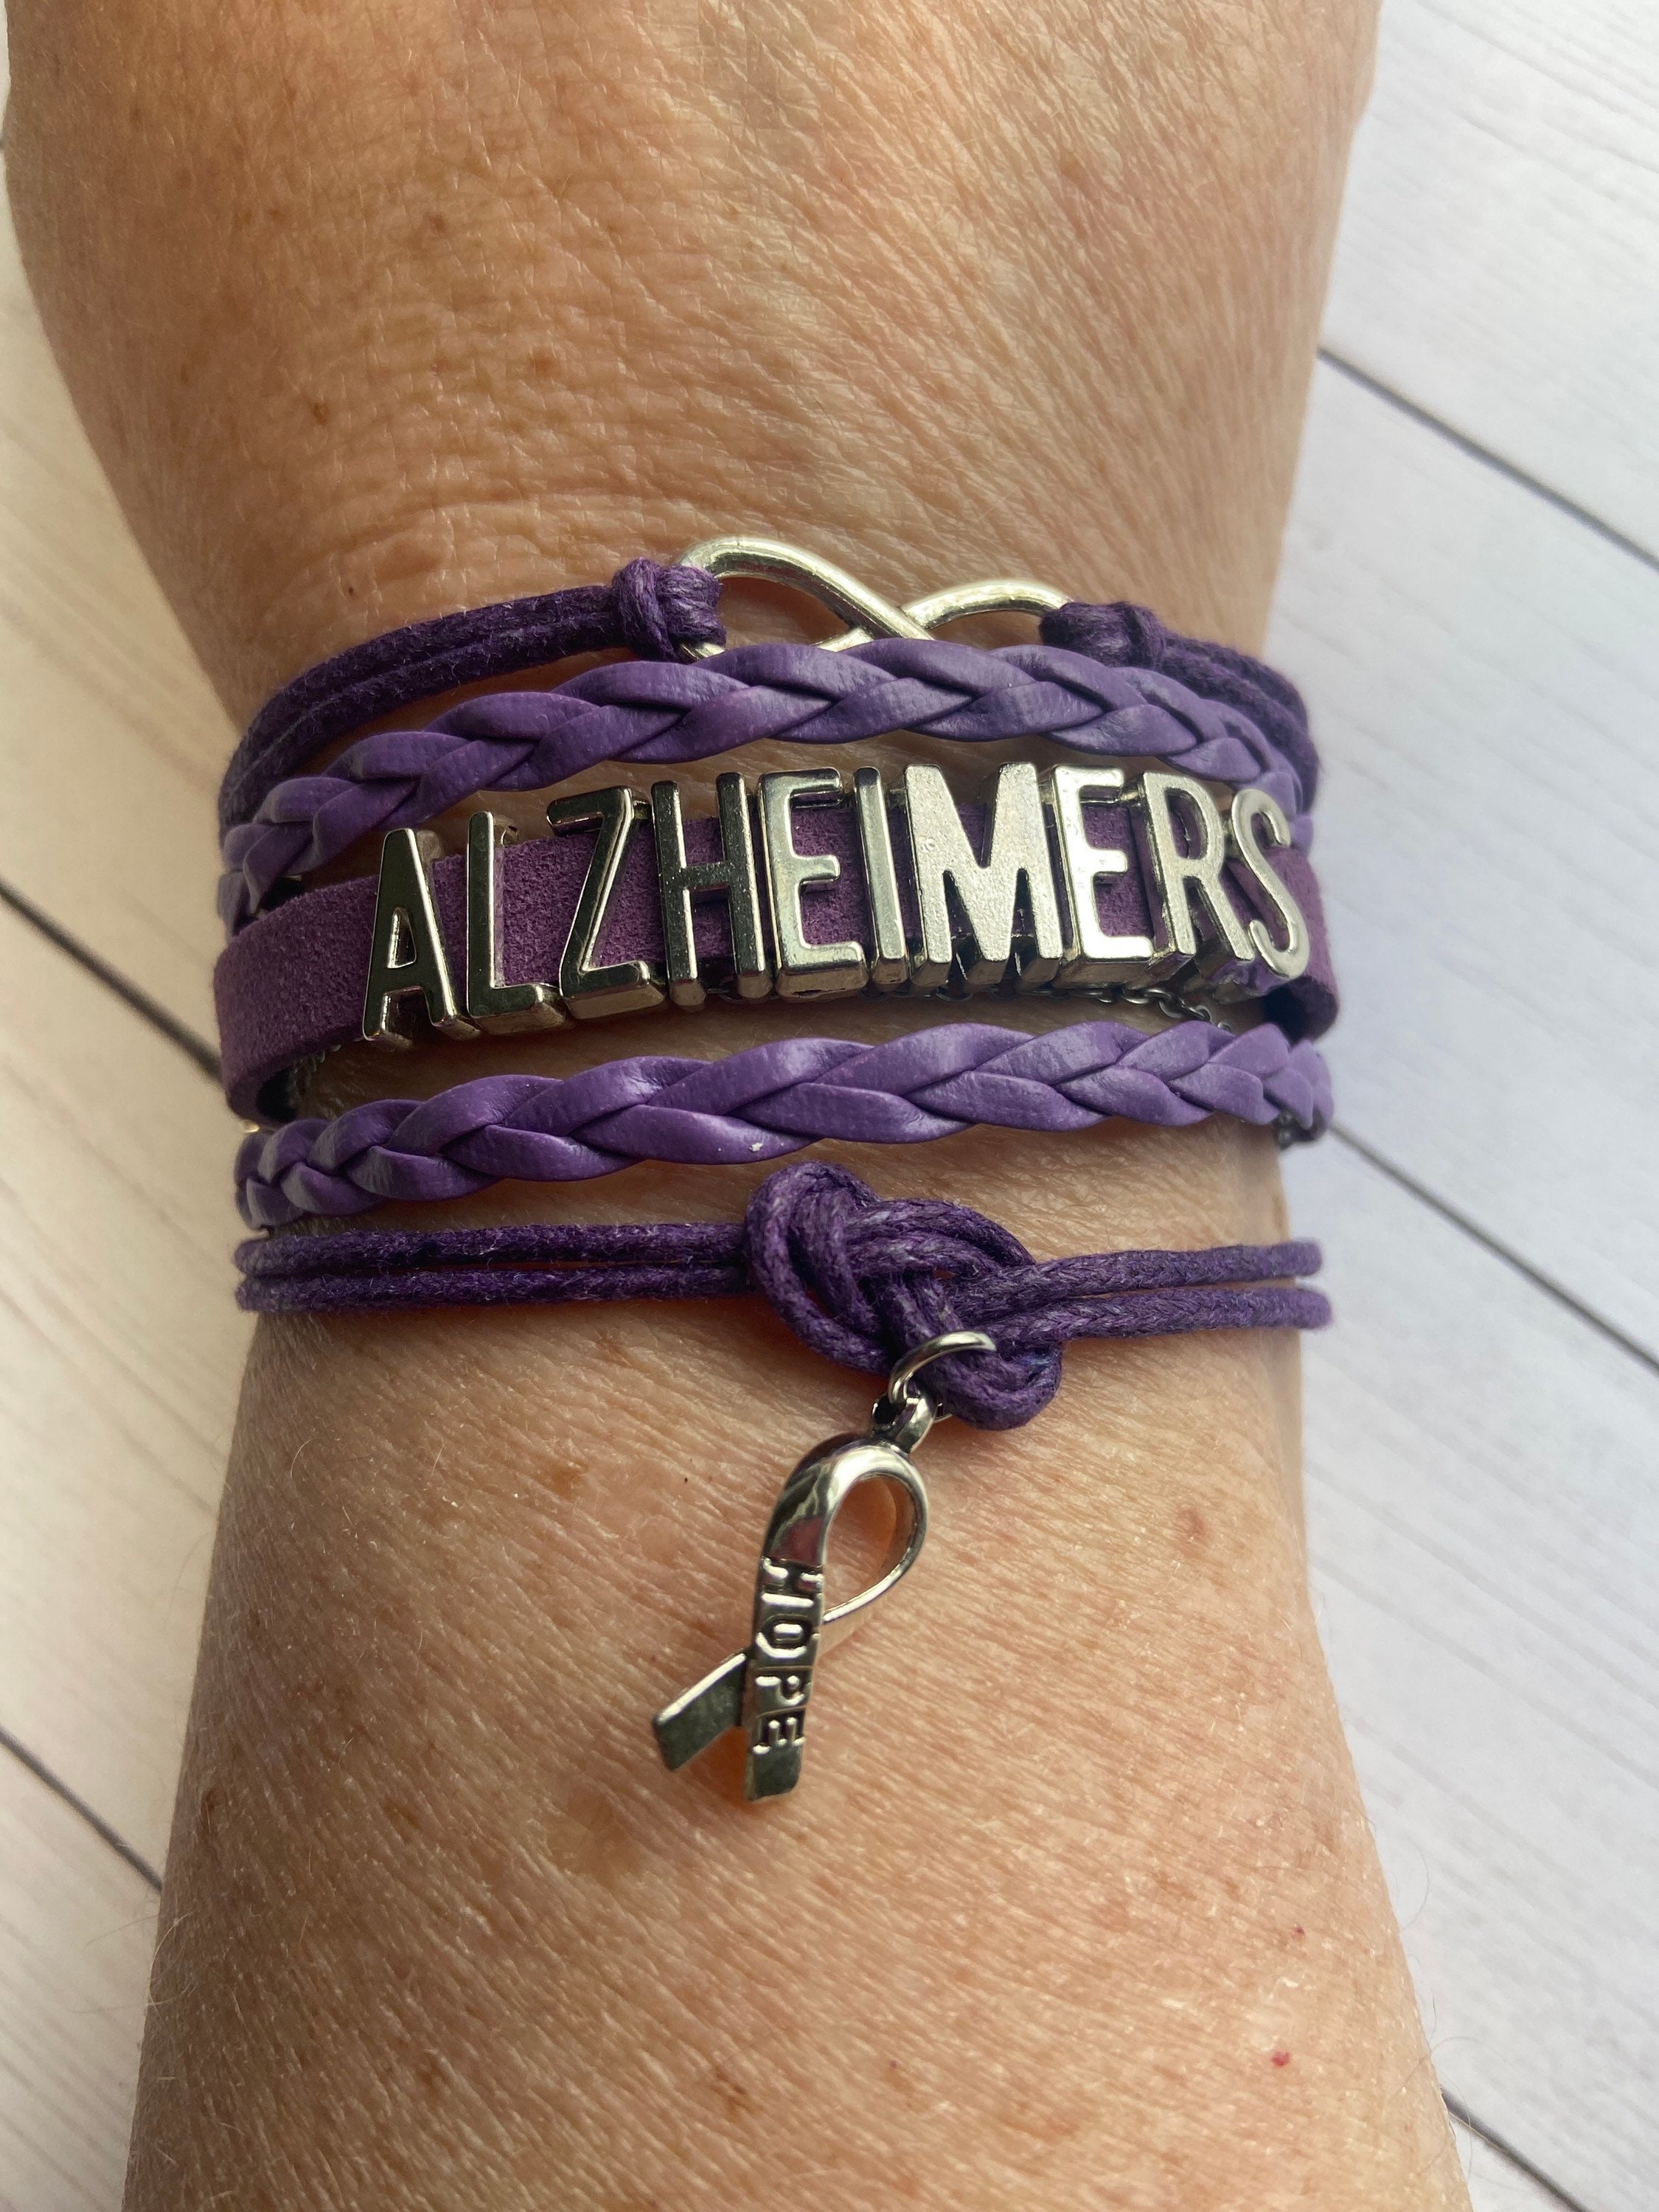 Alzheimers Bracelet. Medical Bracelets. Medical Id Bracelets. Alzheimer's  Bracelet. Medical Id Bracelets. Cost of Engraving Included. - Etsy